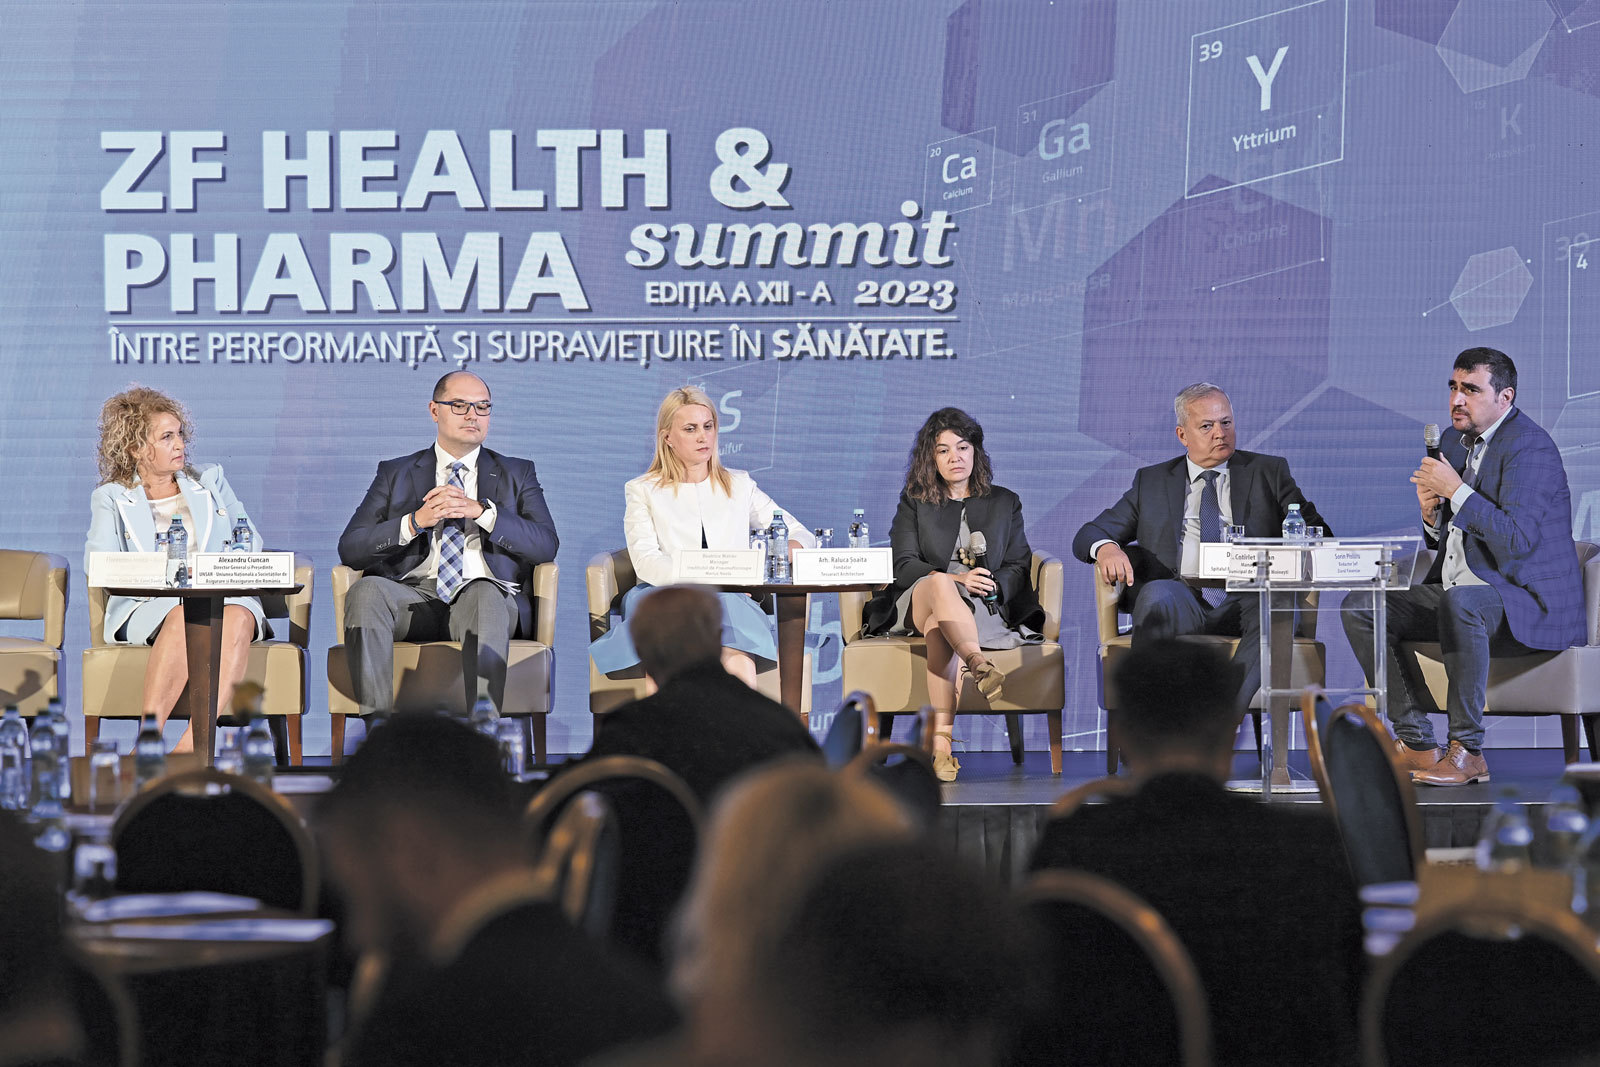 ZF Health & Pharma Summit ’23. Între performanţă şi supravieţuire în Sănătate. Întrebarea cheie astăzi în sistemul de sănătate: cum putem face convergenţa între sistemul public şi cel privat pentru creşterea calităţii actului medical?